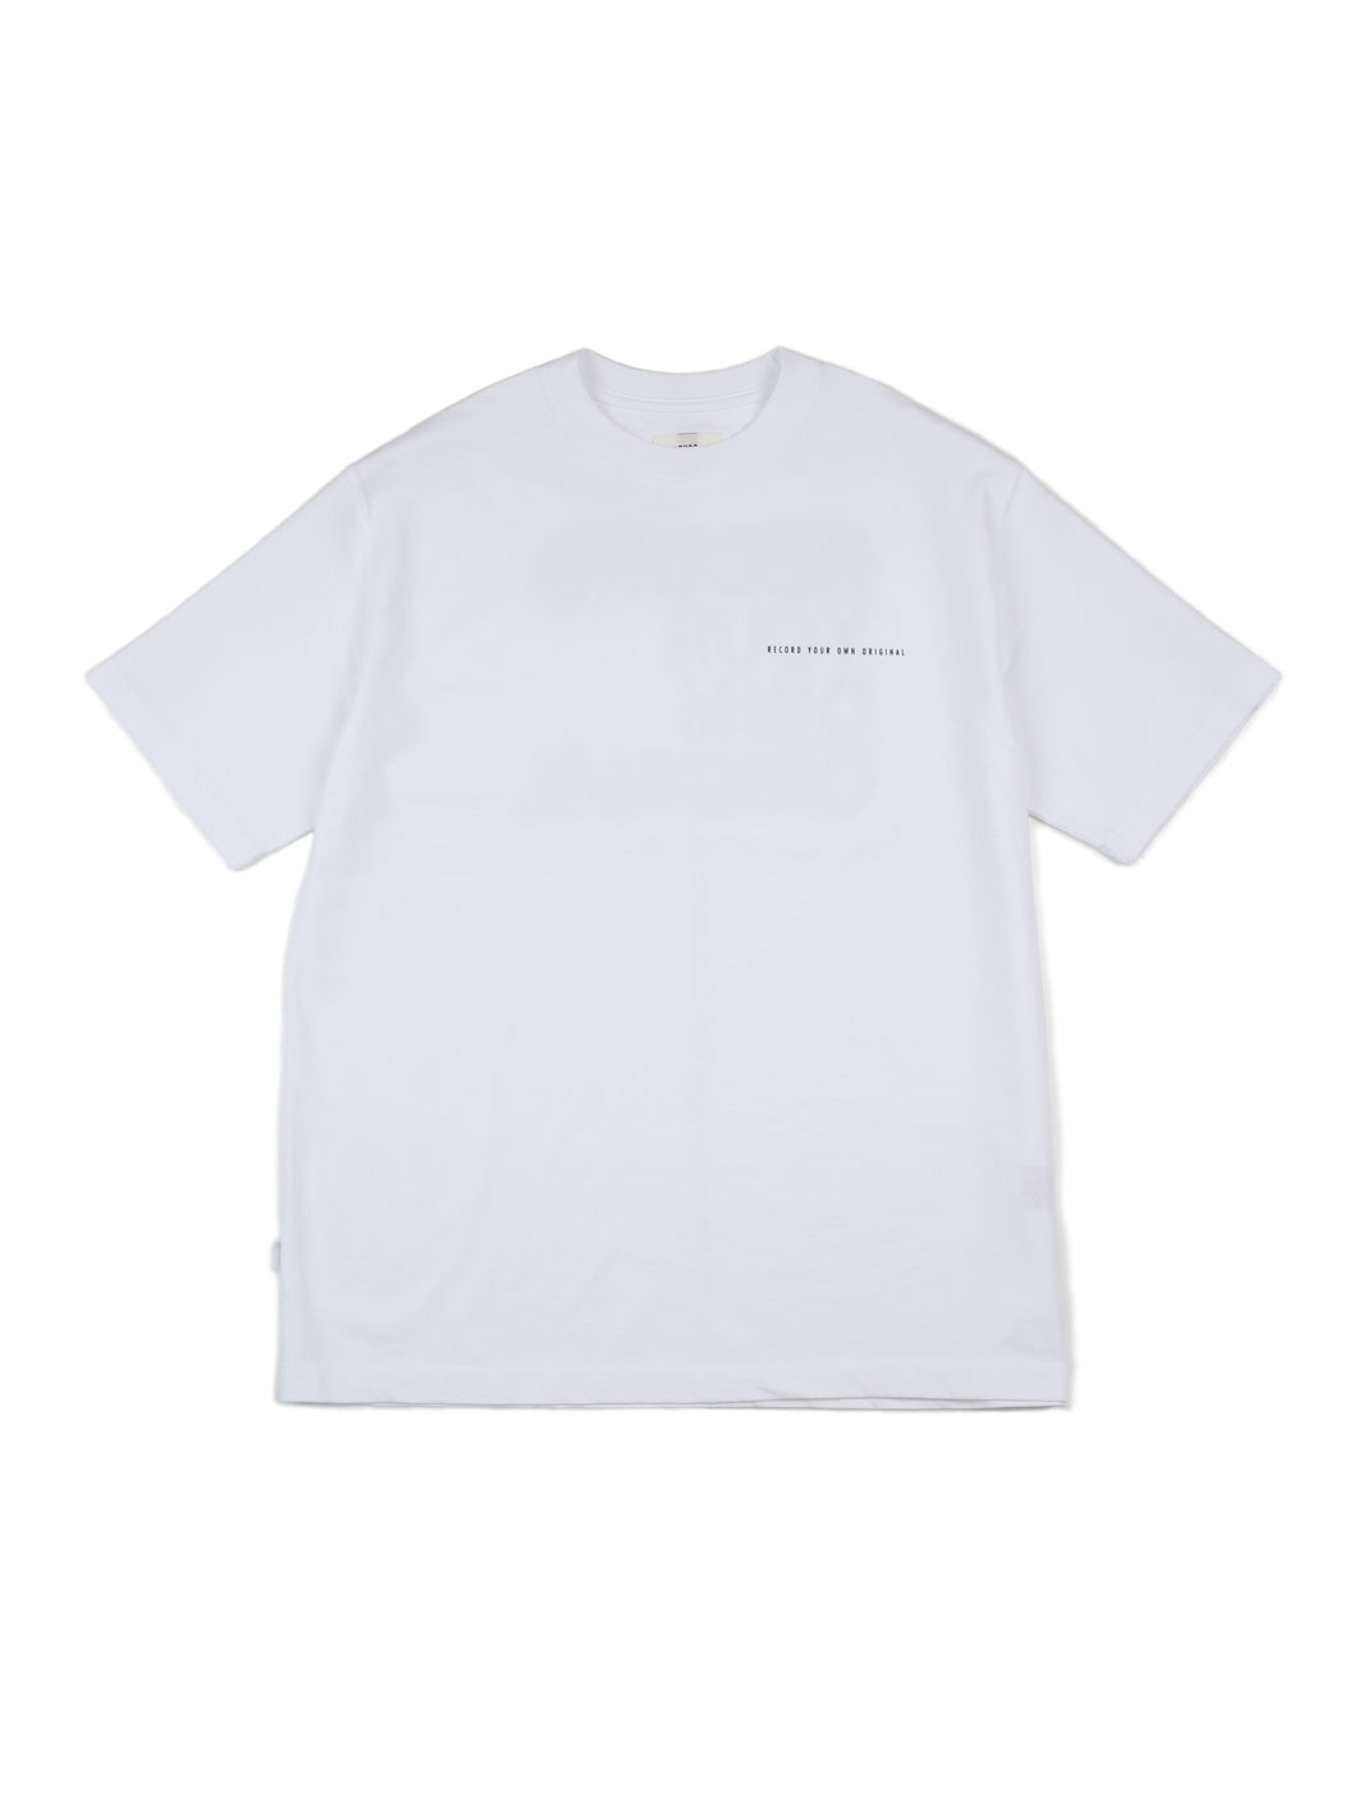 Symmetric blur-print_t-shirts #11 [white]